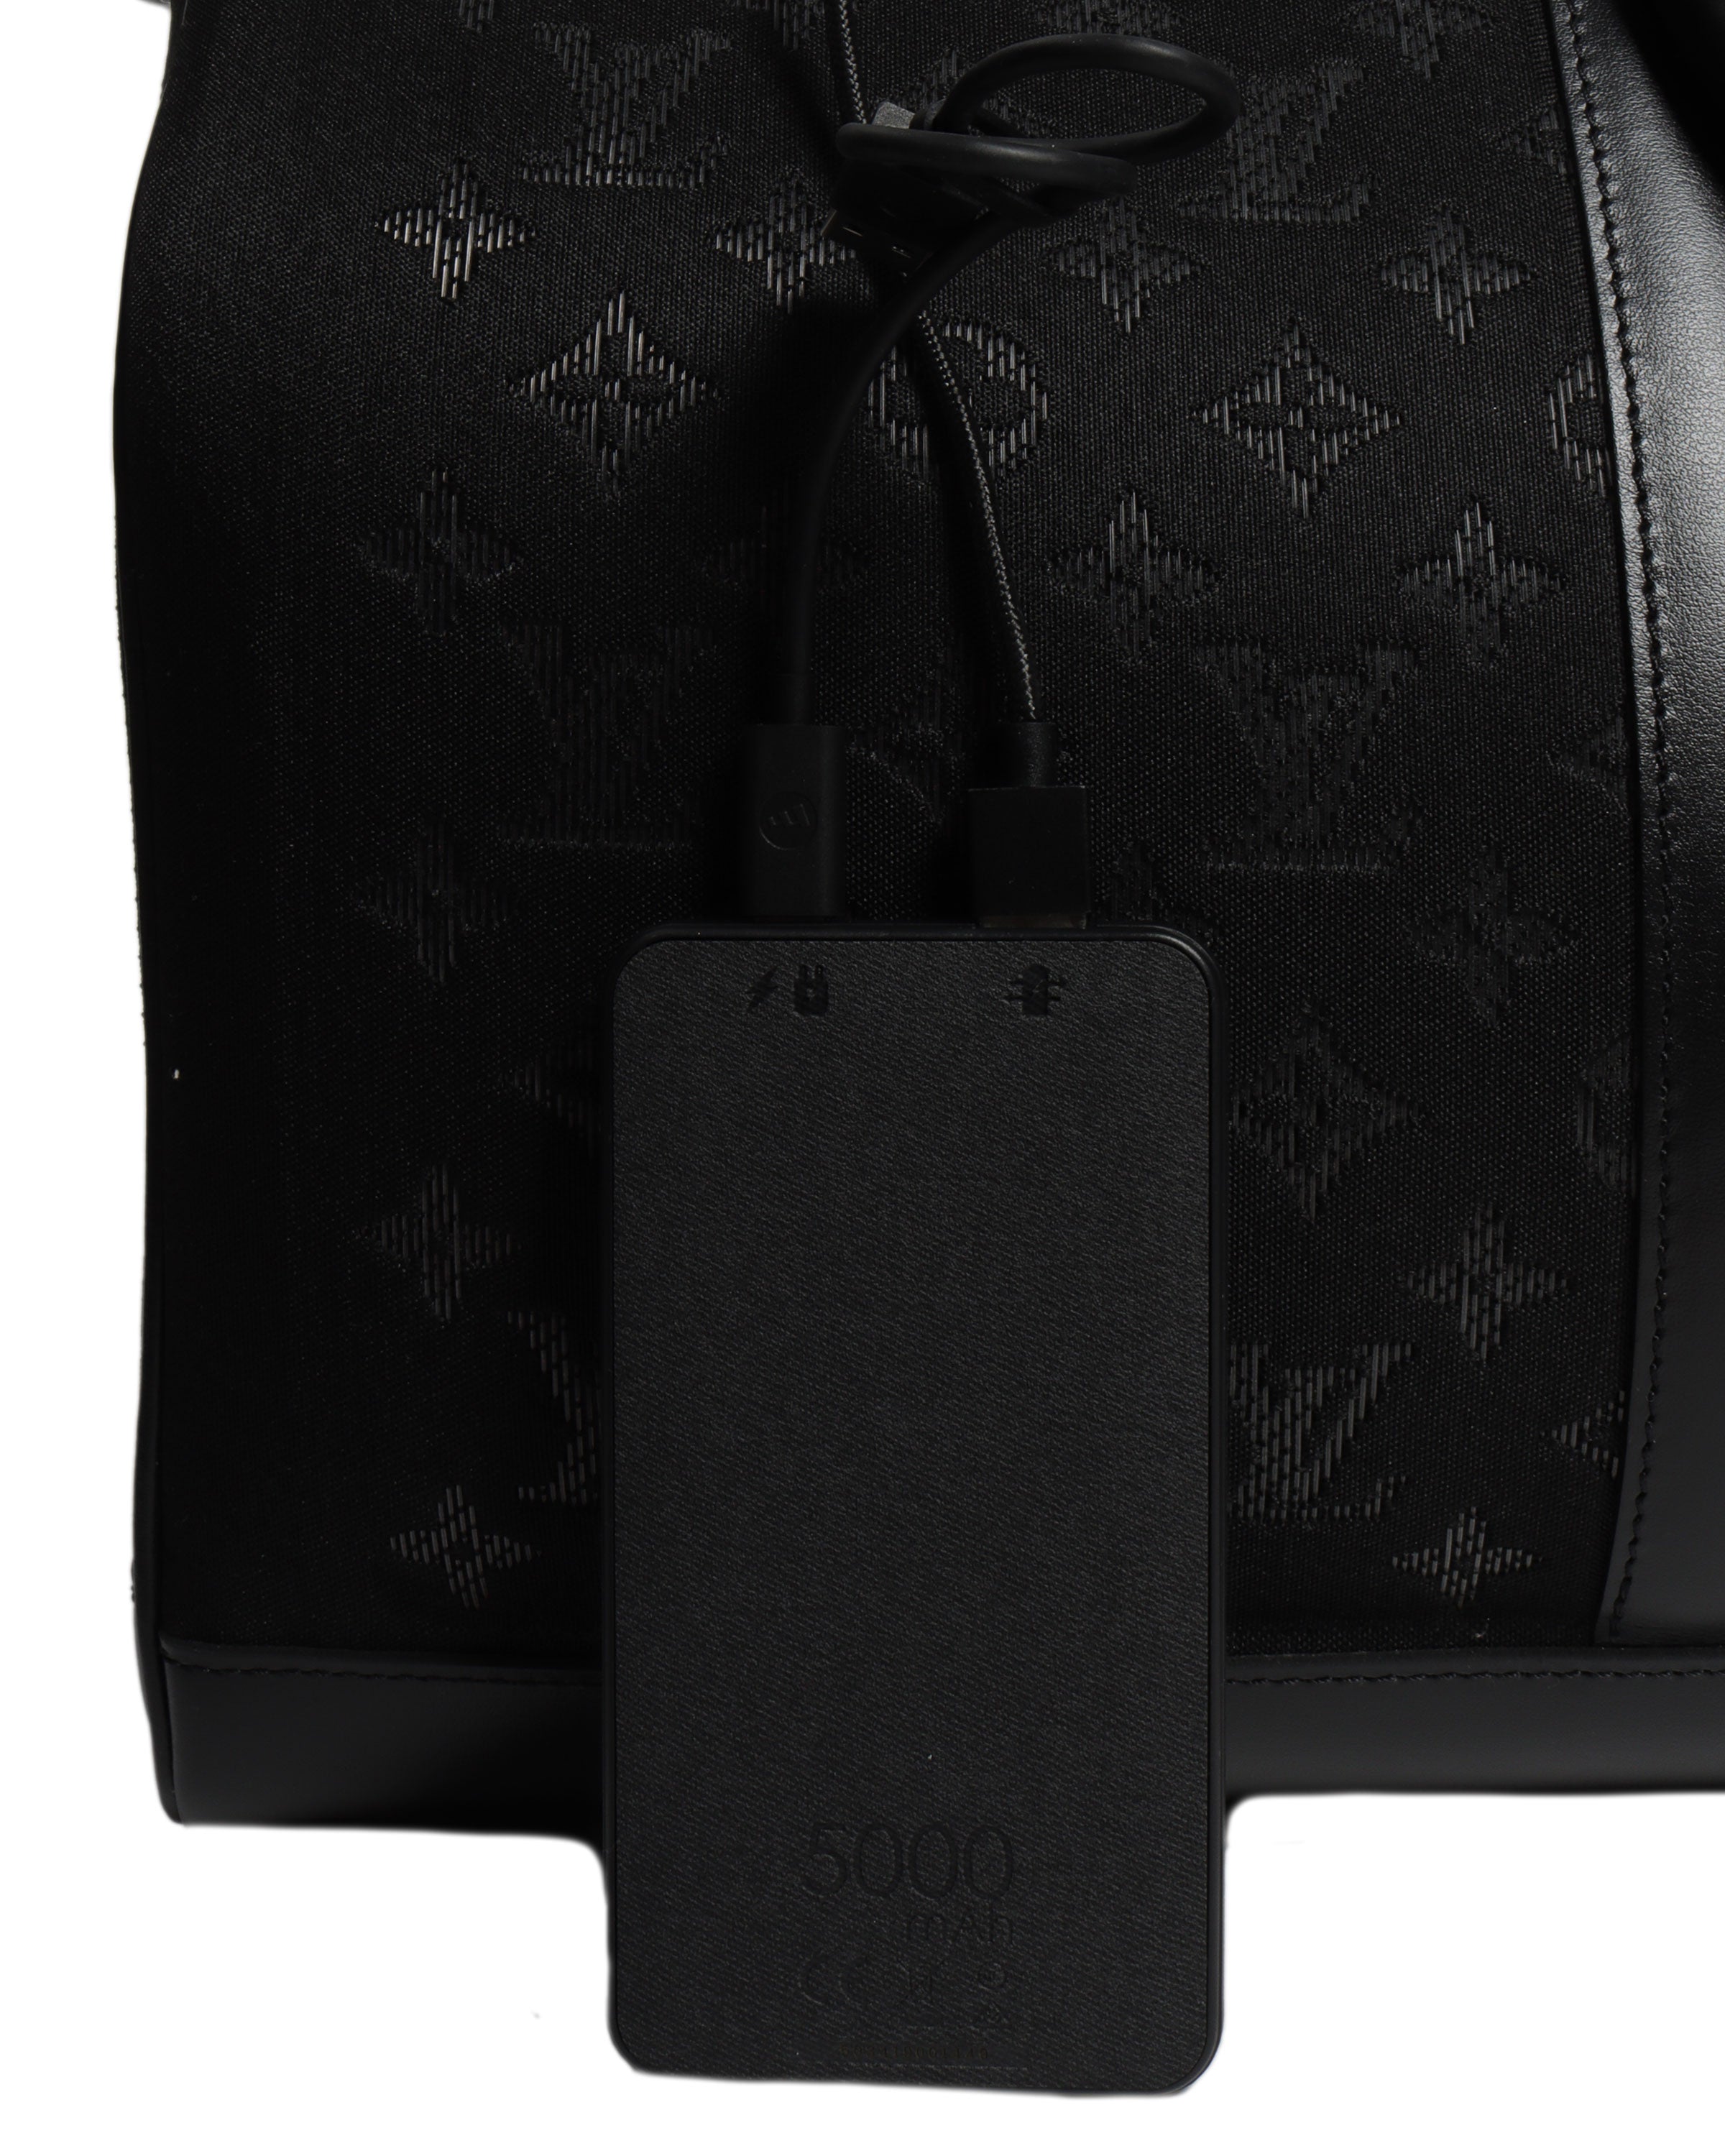 Louis Vuitton Keepall 50 Bandouliere Light Ups